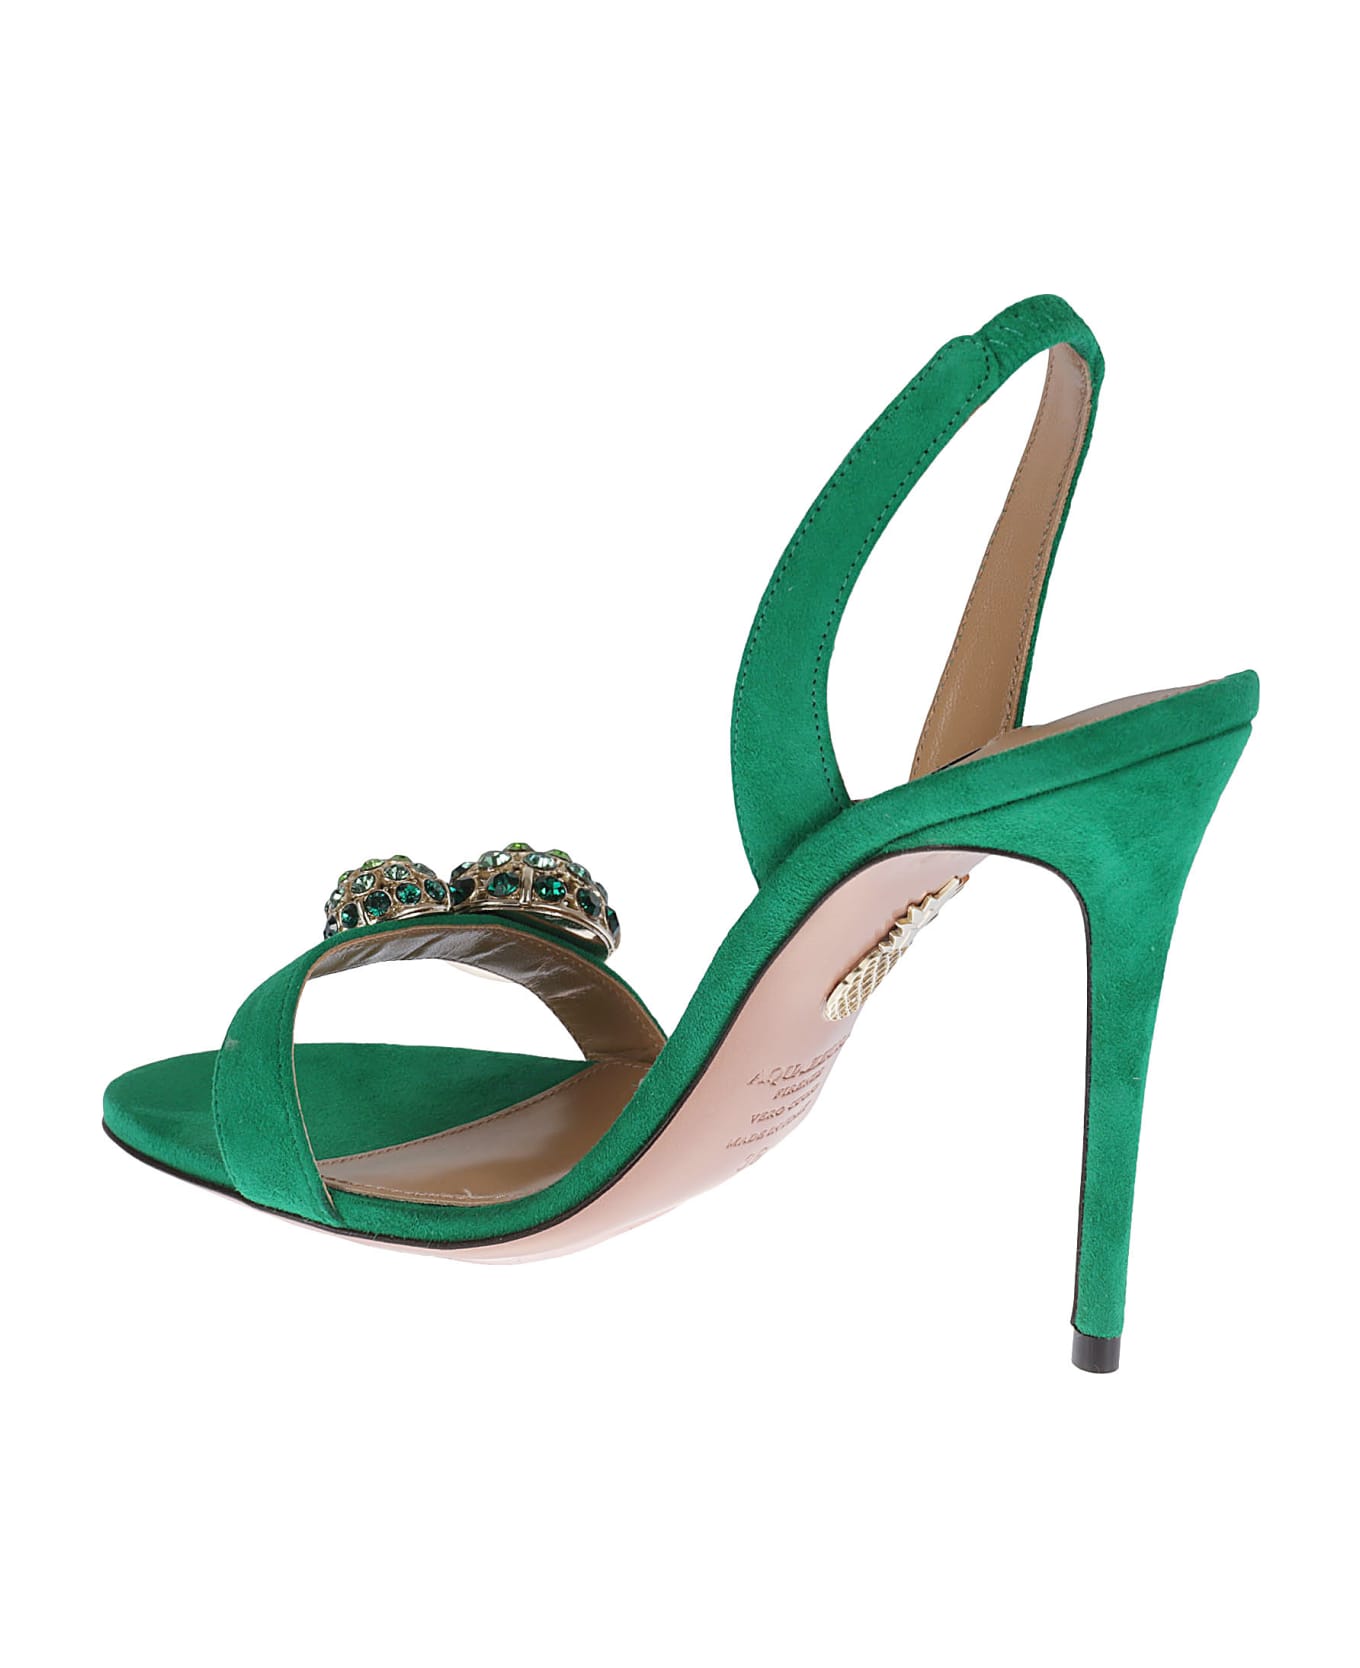 Aquazzura Love Bubble Sandals - Green